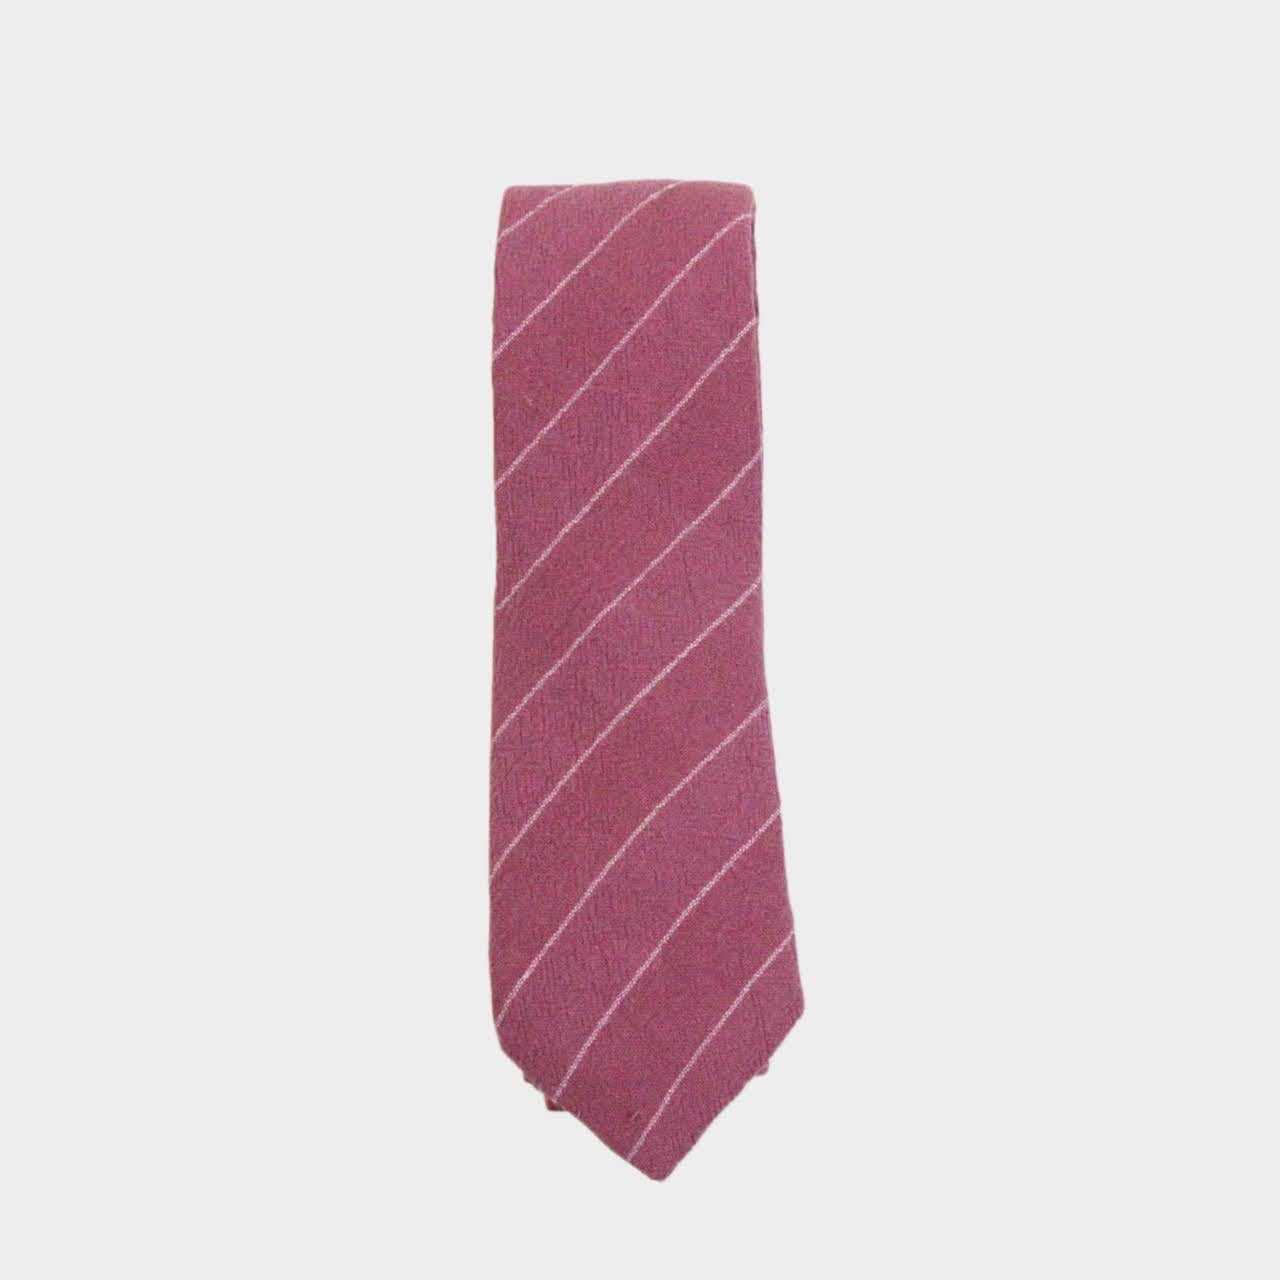 JOSS - Men's Tie